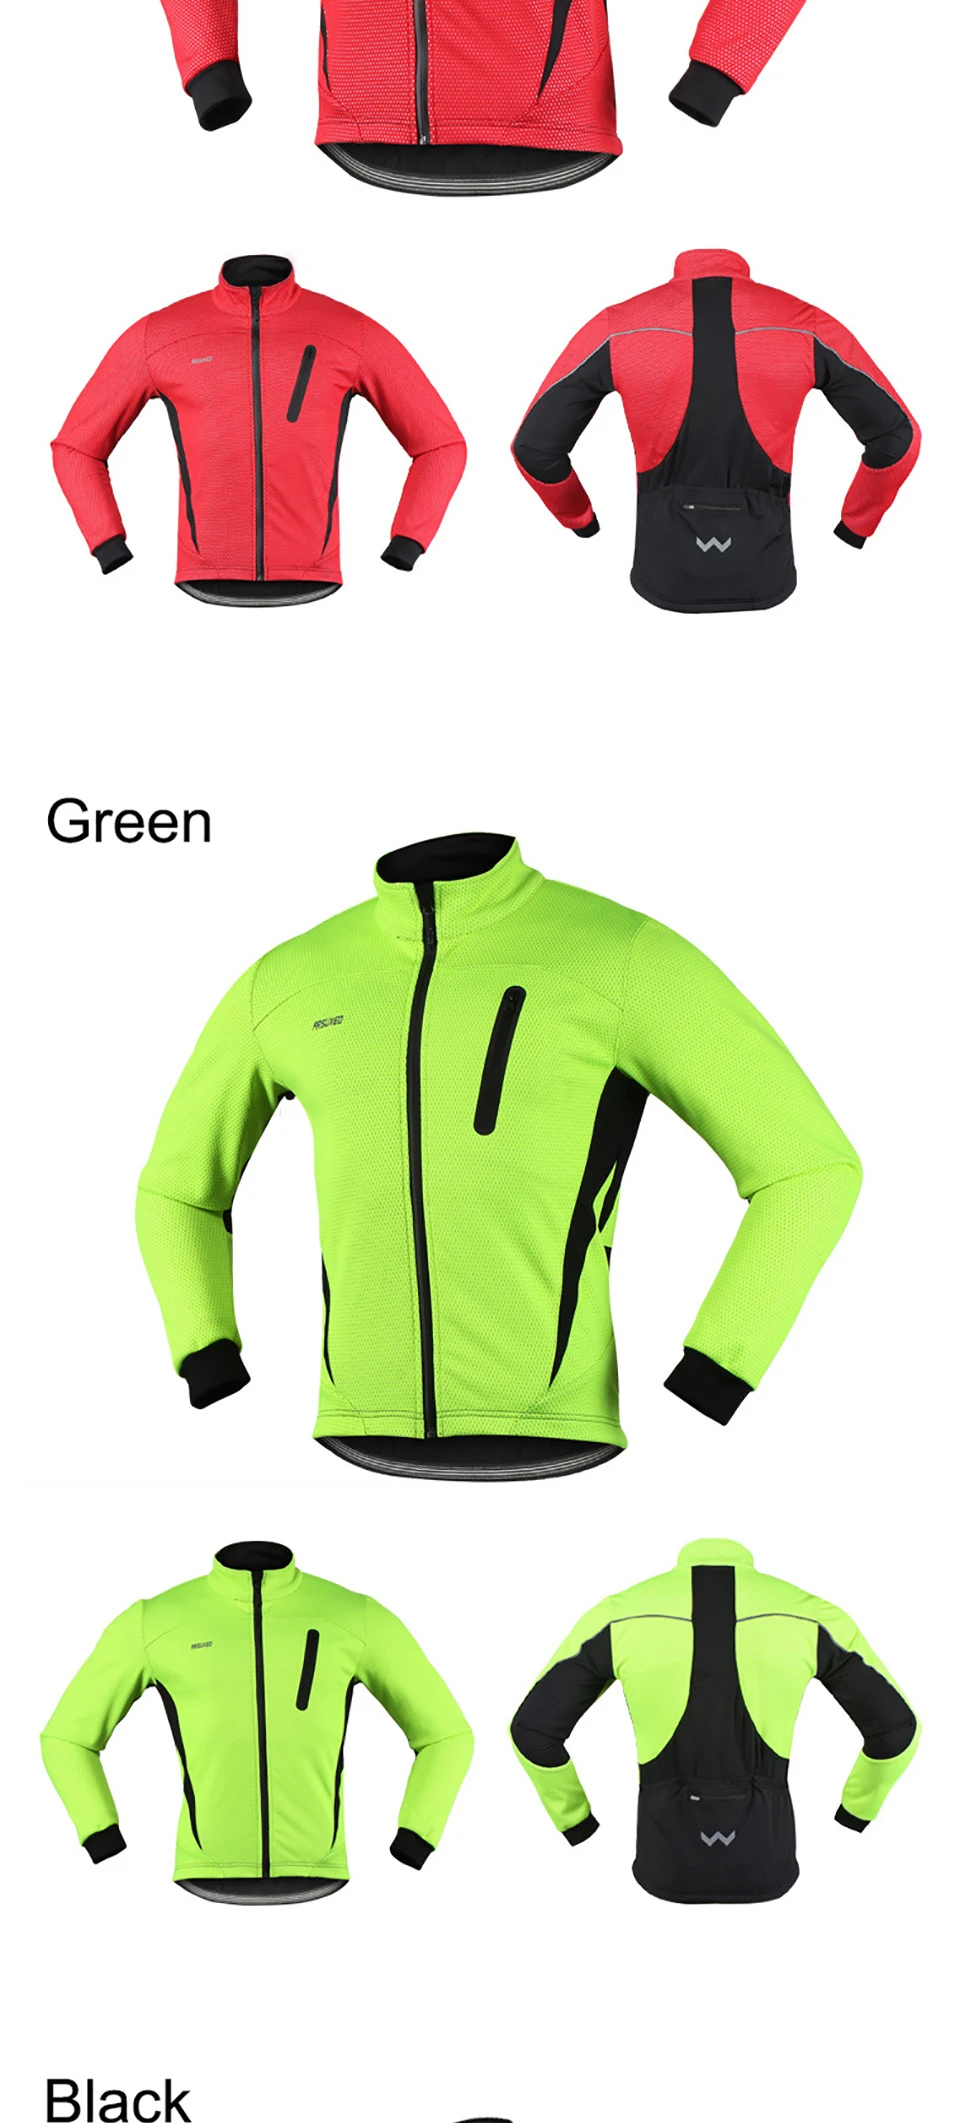 Теплая куртка для велосипедного спорта Зимняя Теплая Флисовая велосипедная одежда ветрозащитная спортивная куртка MTB велосипедная Джерси